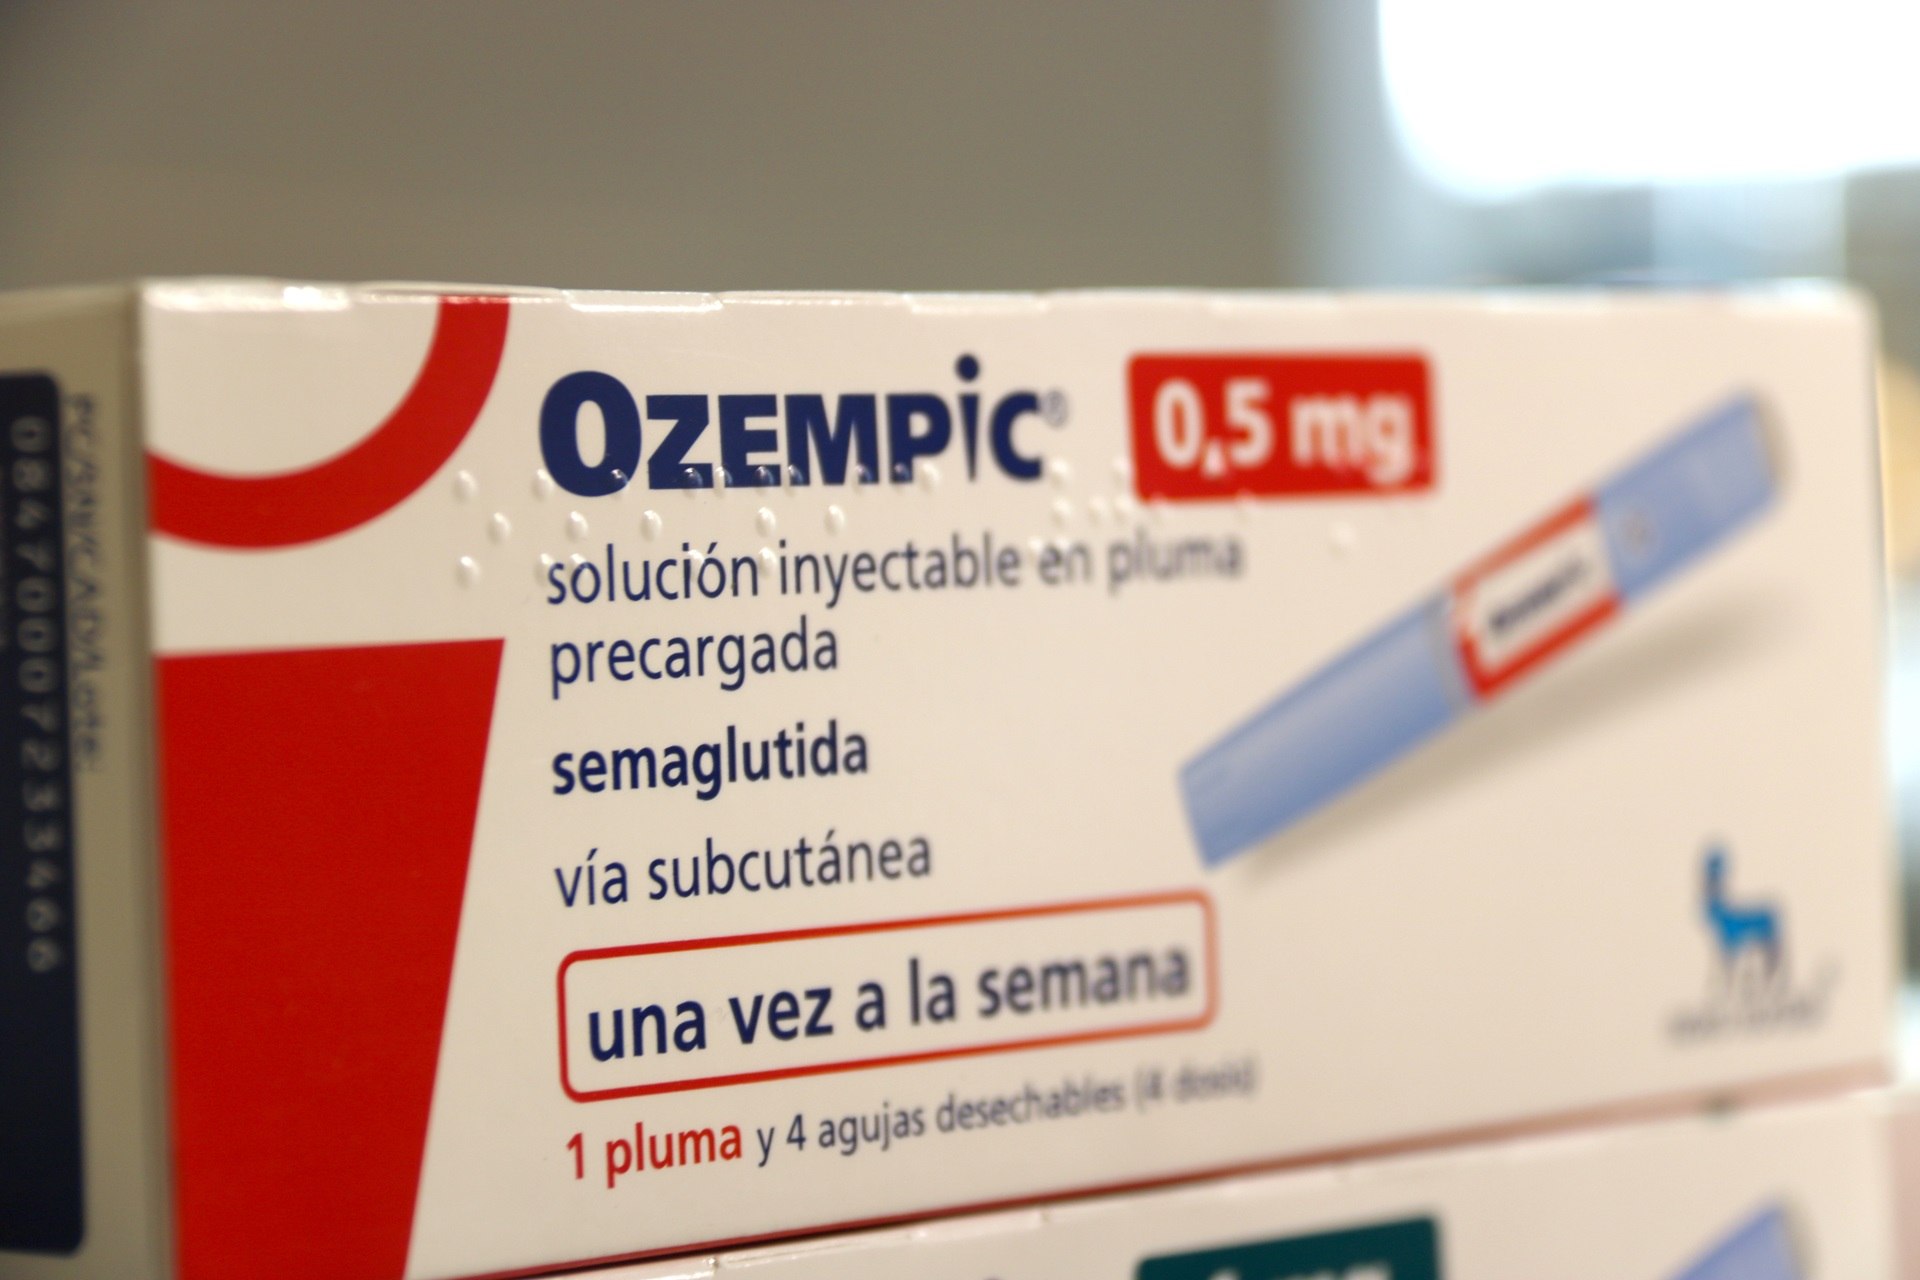 Les receptes dels medicaments per a diabetis de la família d'Ozempic augmenten un 70% en dos anys a Catalunya